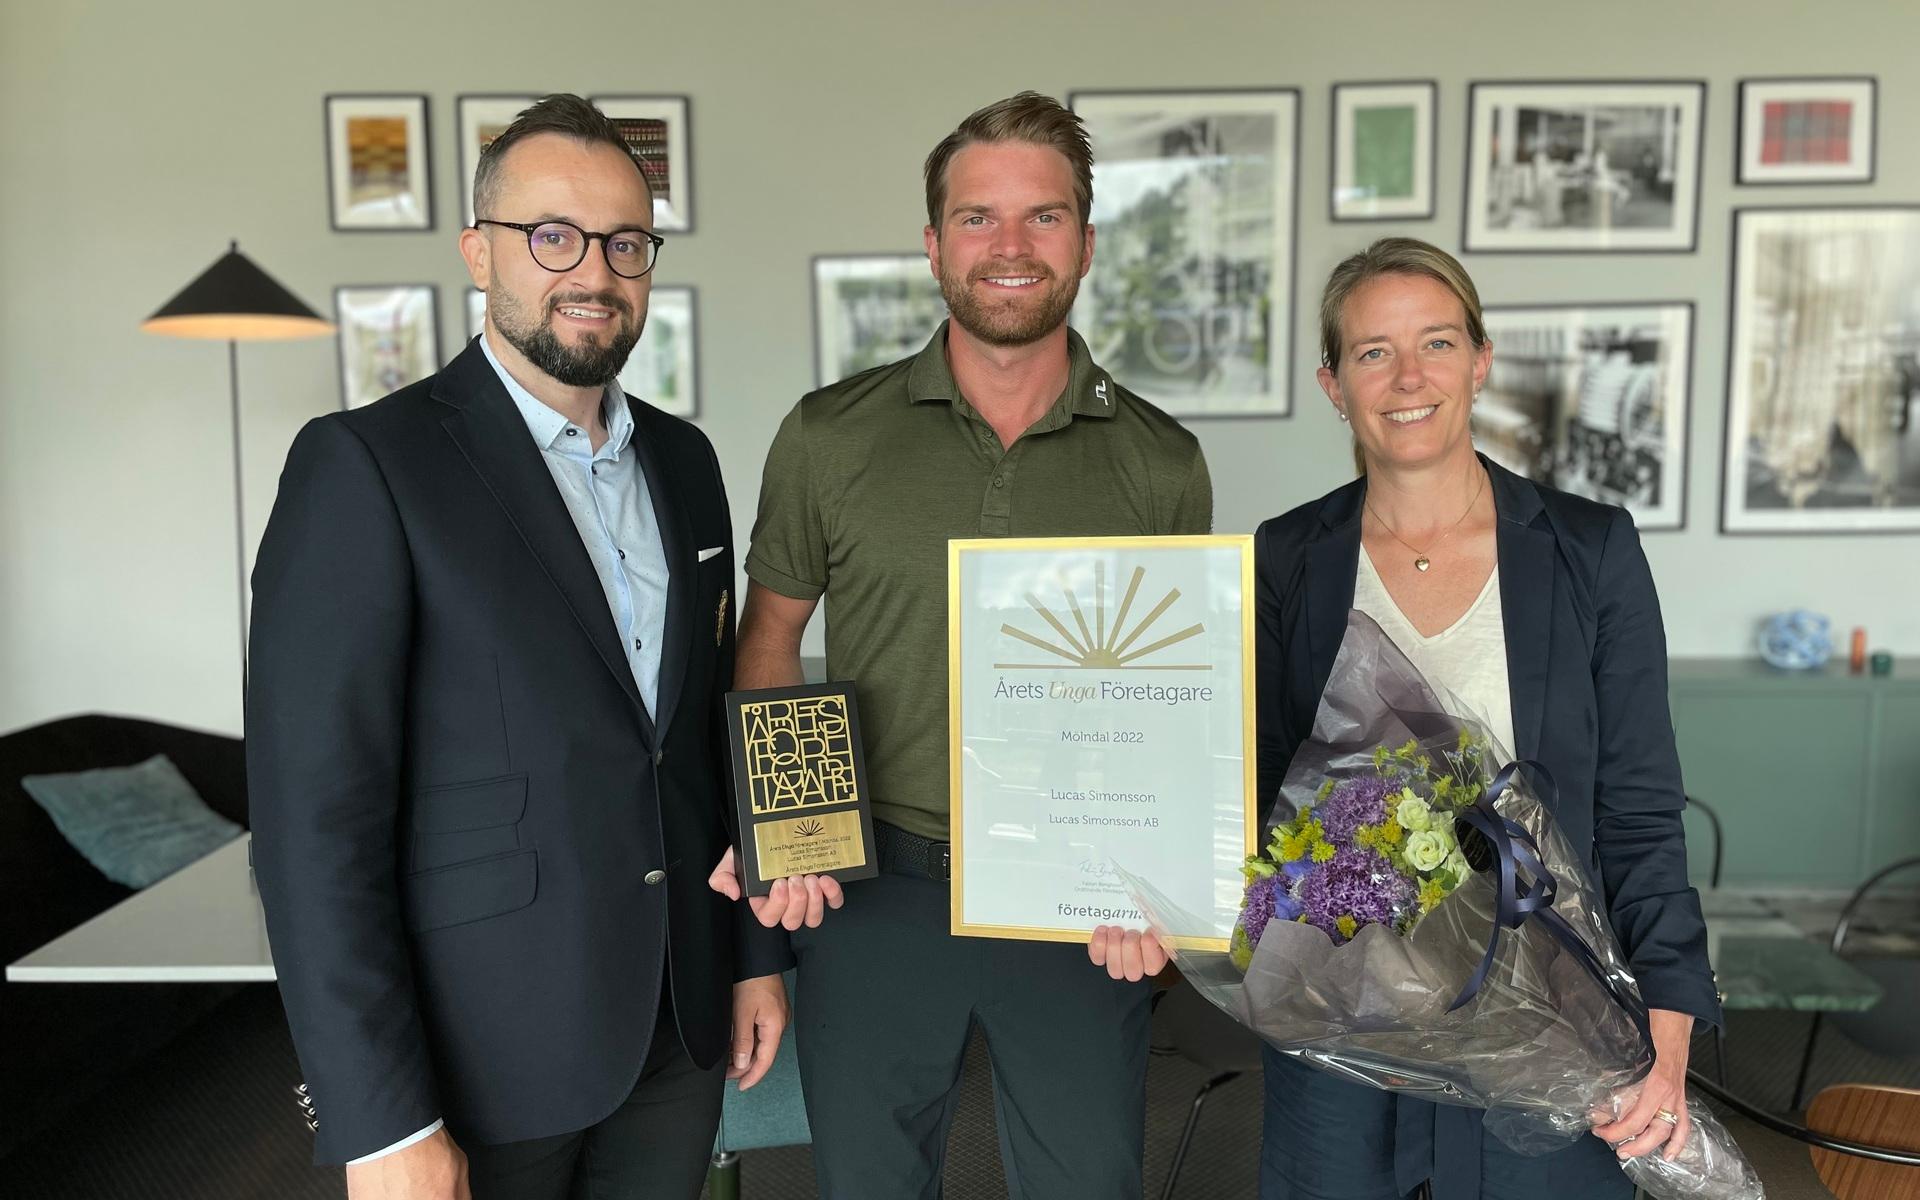 Lucas Simonsson tog emot utmärkelsen på Hotell The Weaver i Krokslätt under måndagsmorgonen. Från vänster: Ajdin Hasic, Lucas Simonsson och Karolina Flink Berndtsson.